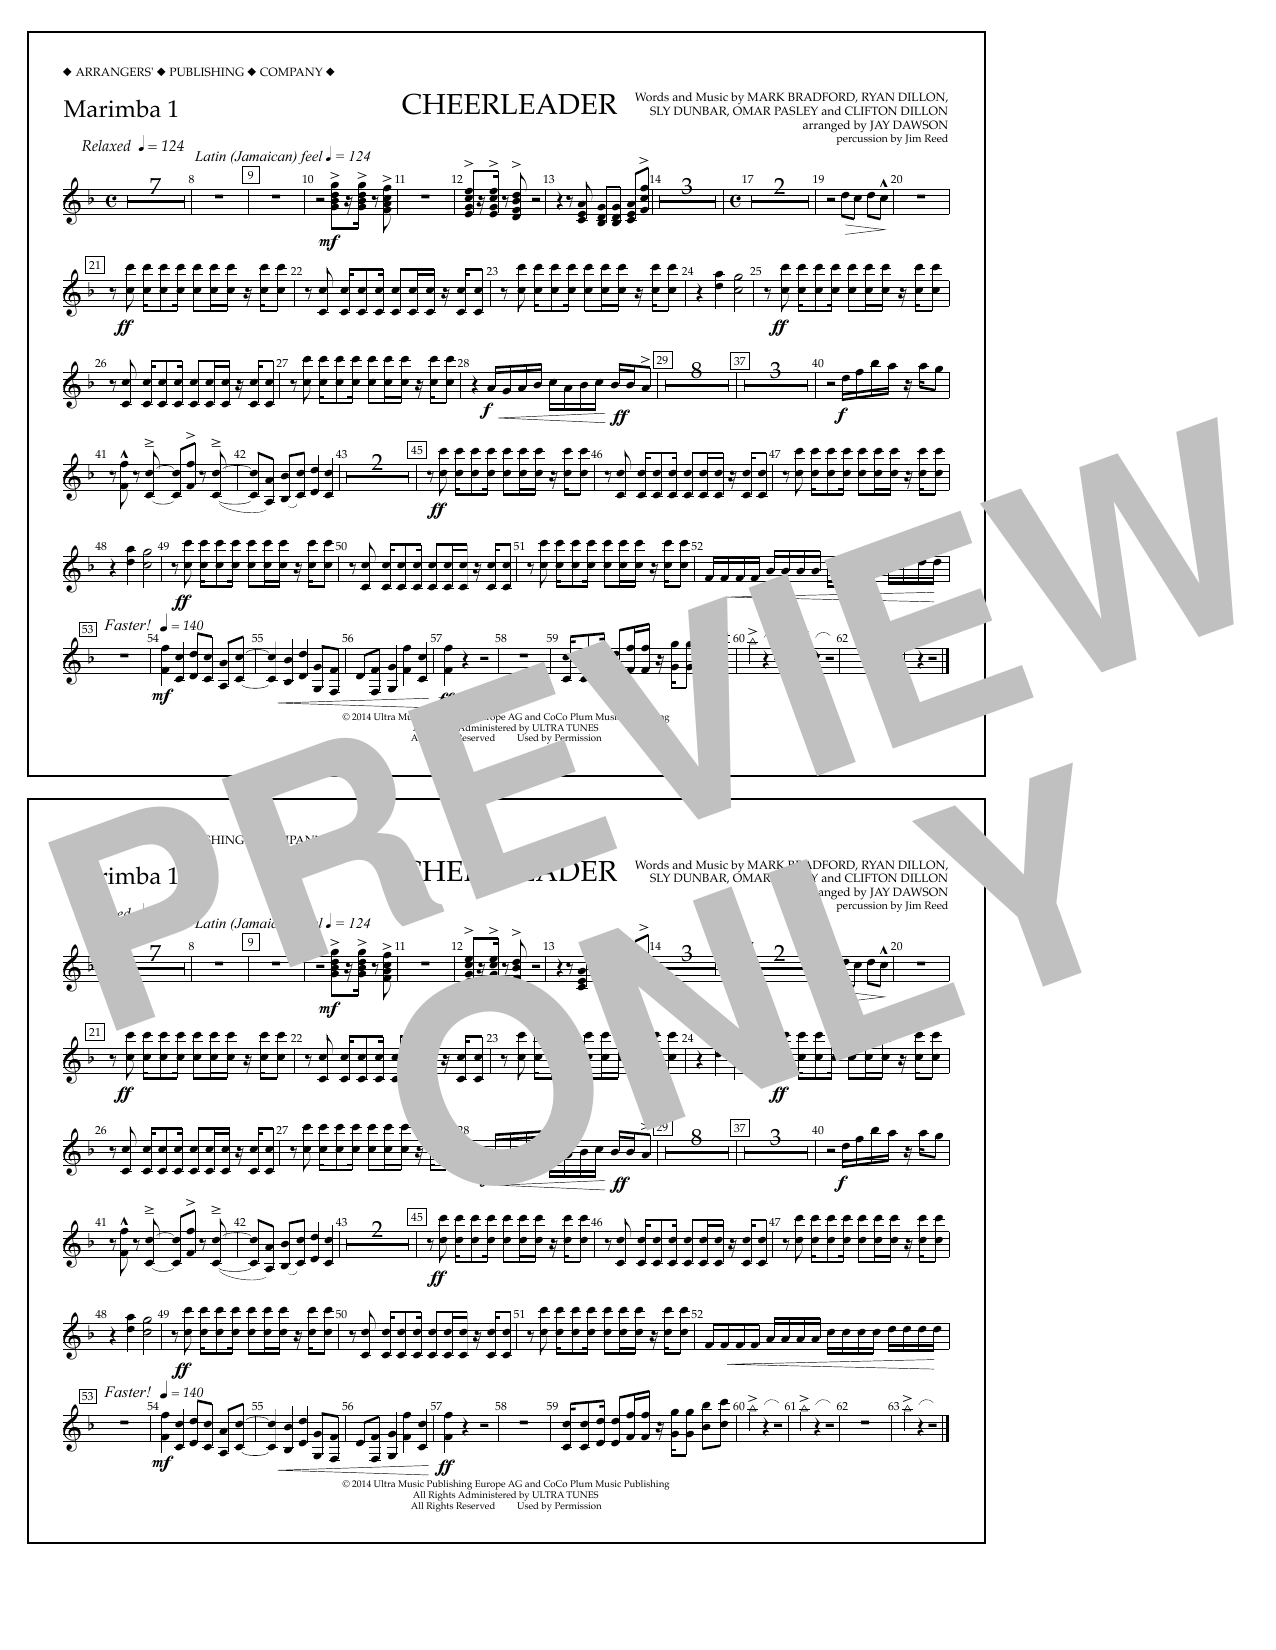 Jay Dawson Cheerleader - Marimba 1 Sheet Music Notes & Chords for Marching Band - Download or Print PDF